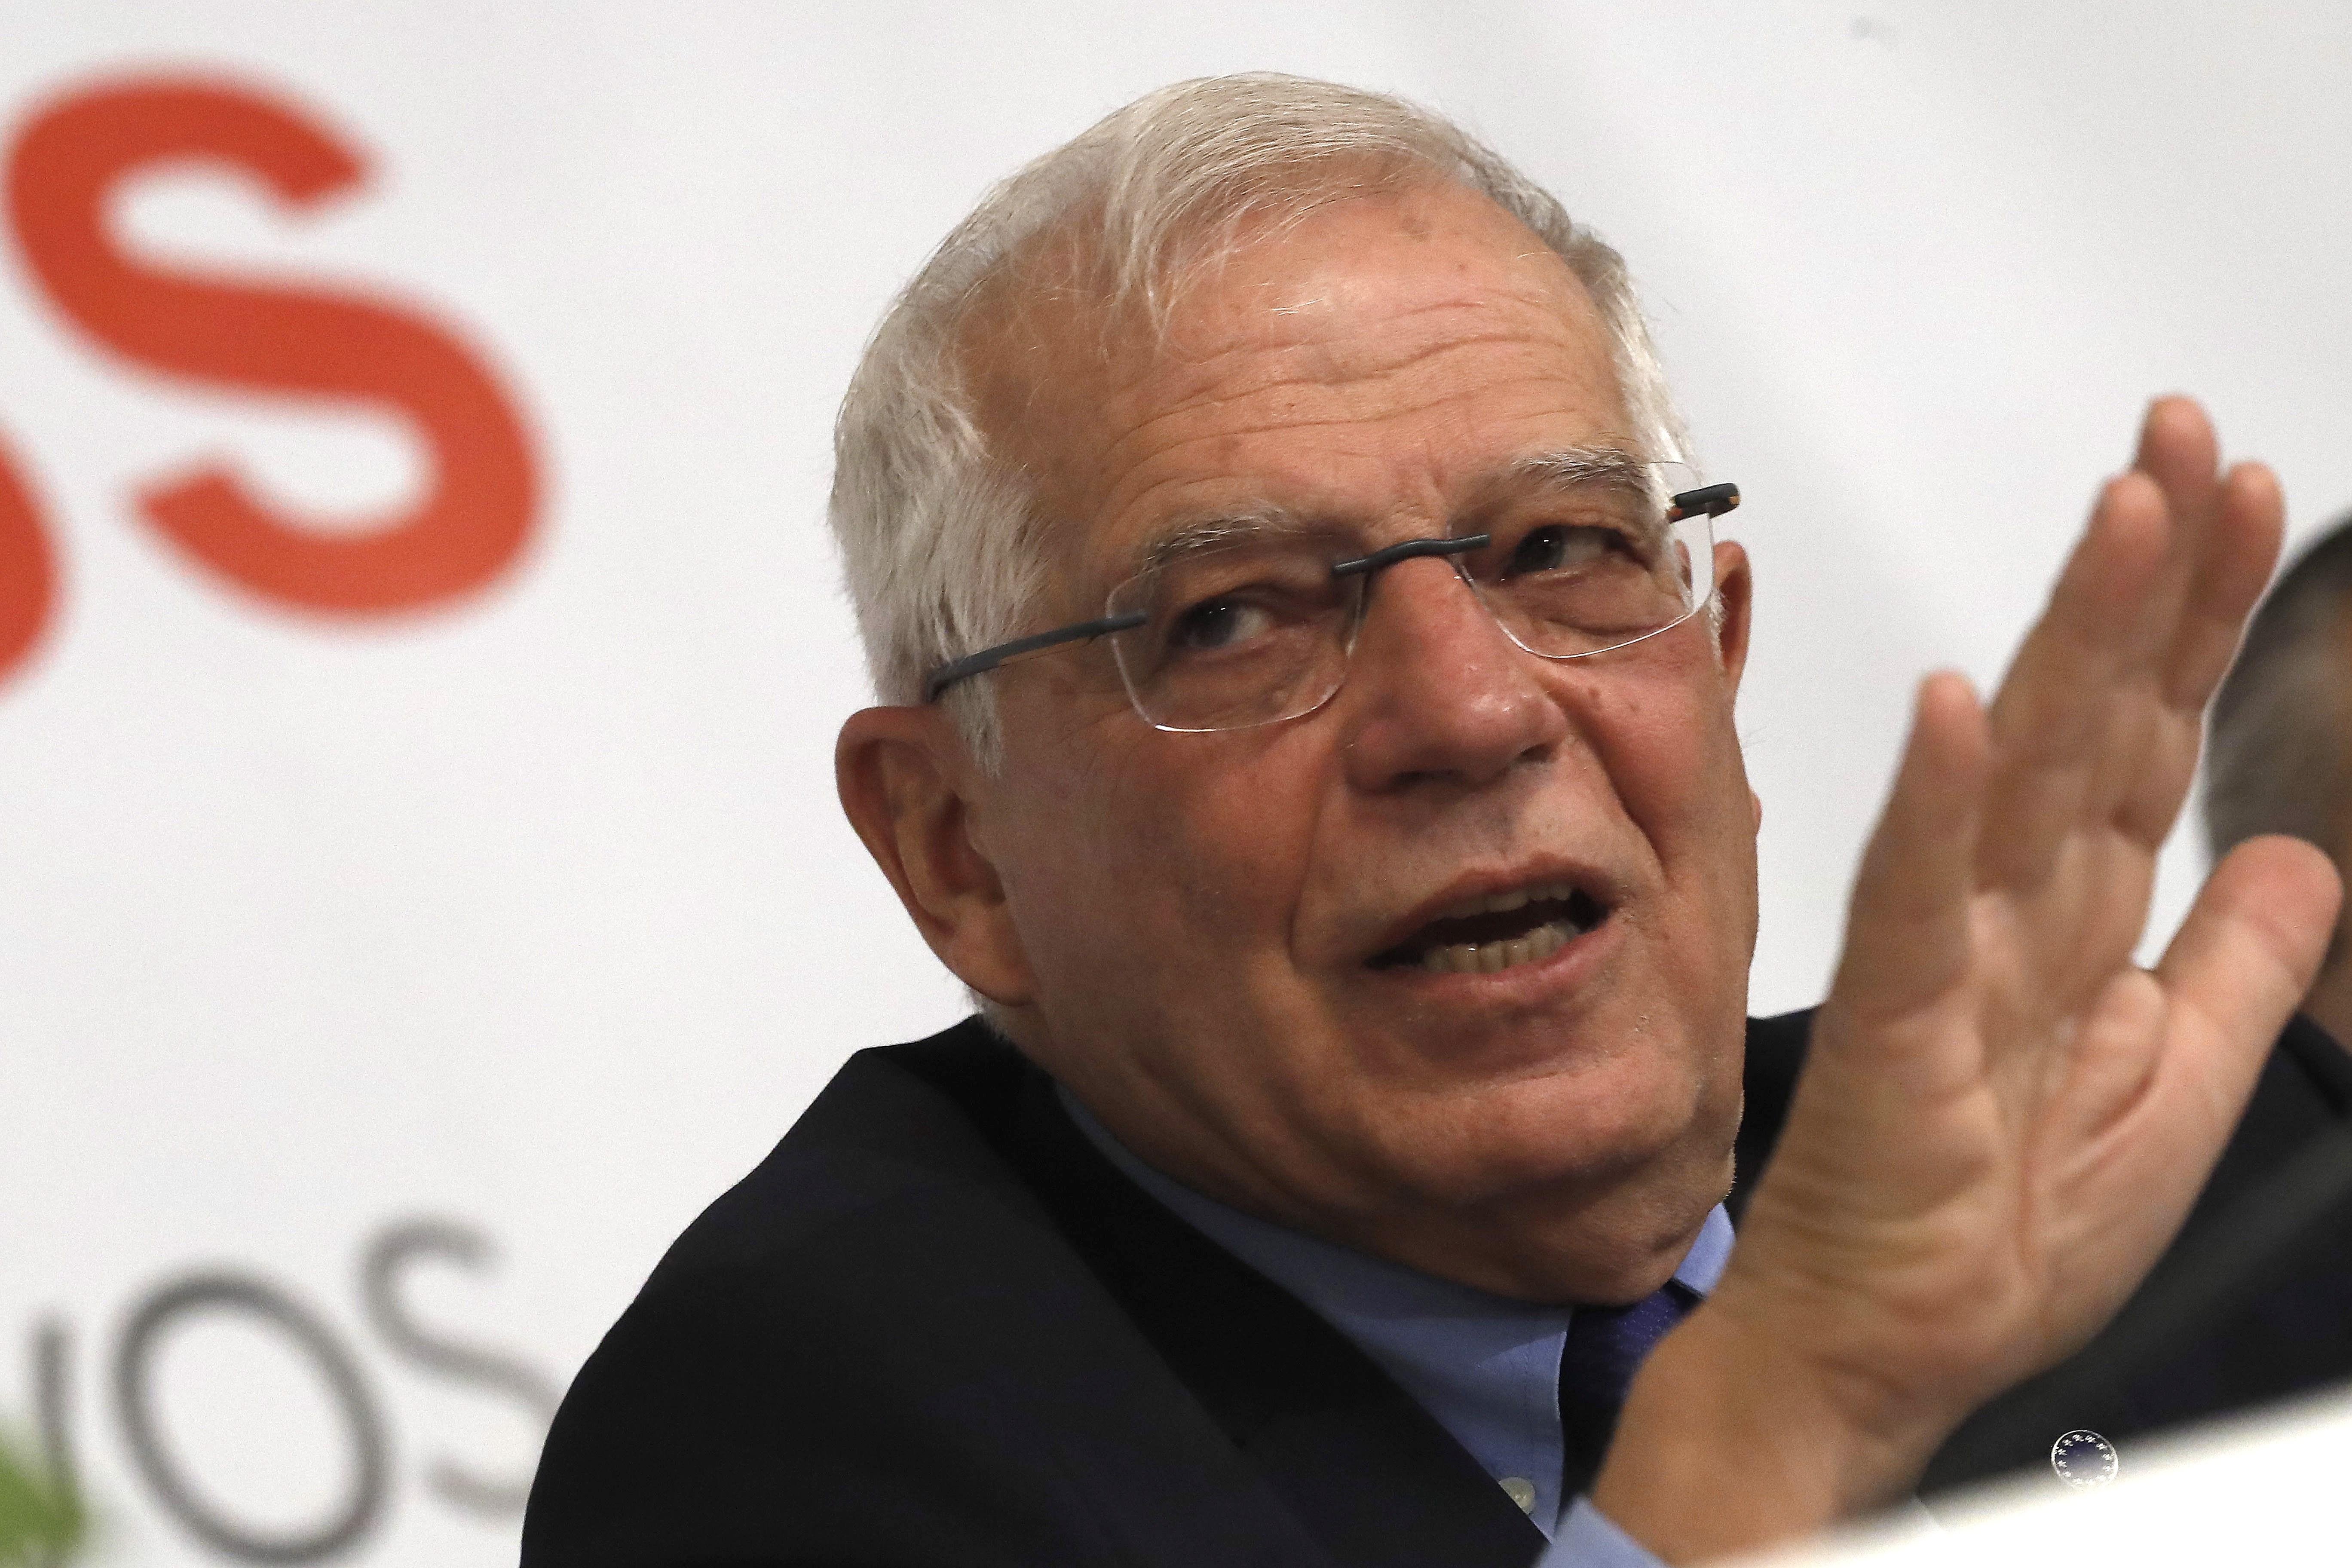 Borrell no se descarta para encabezar la lista del PSOE a las europeas